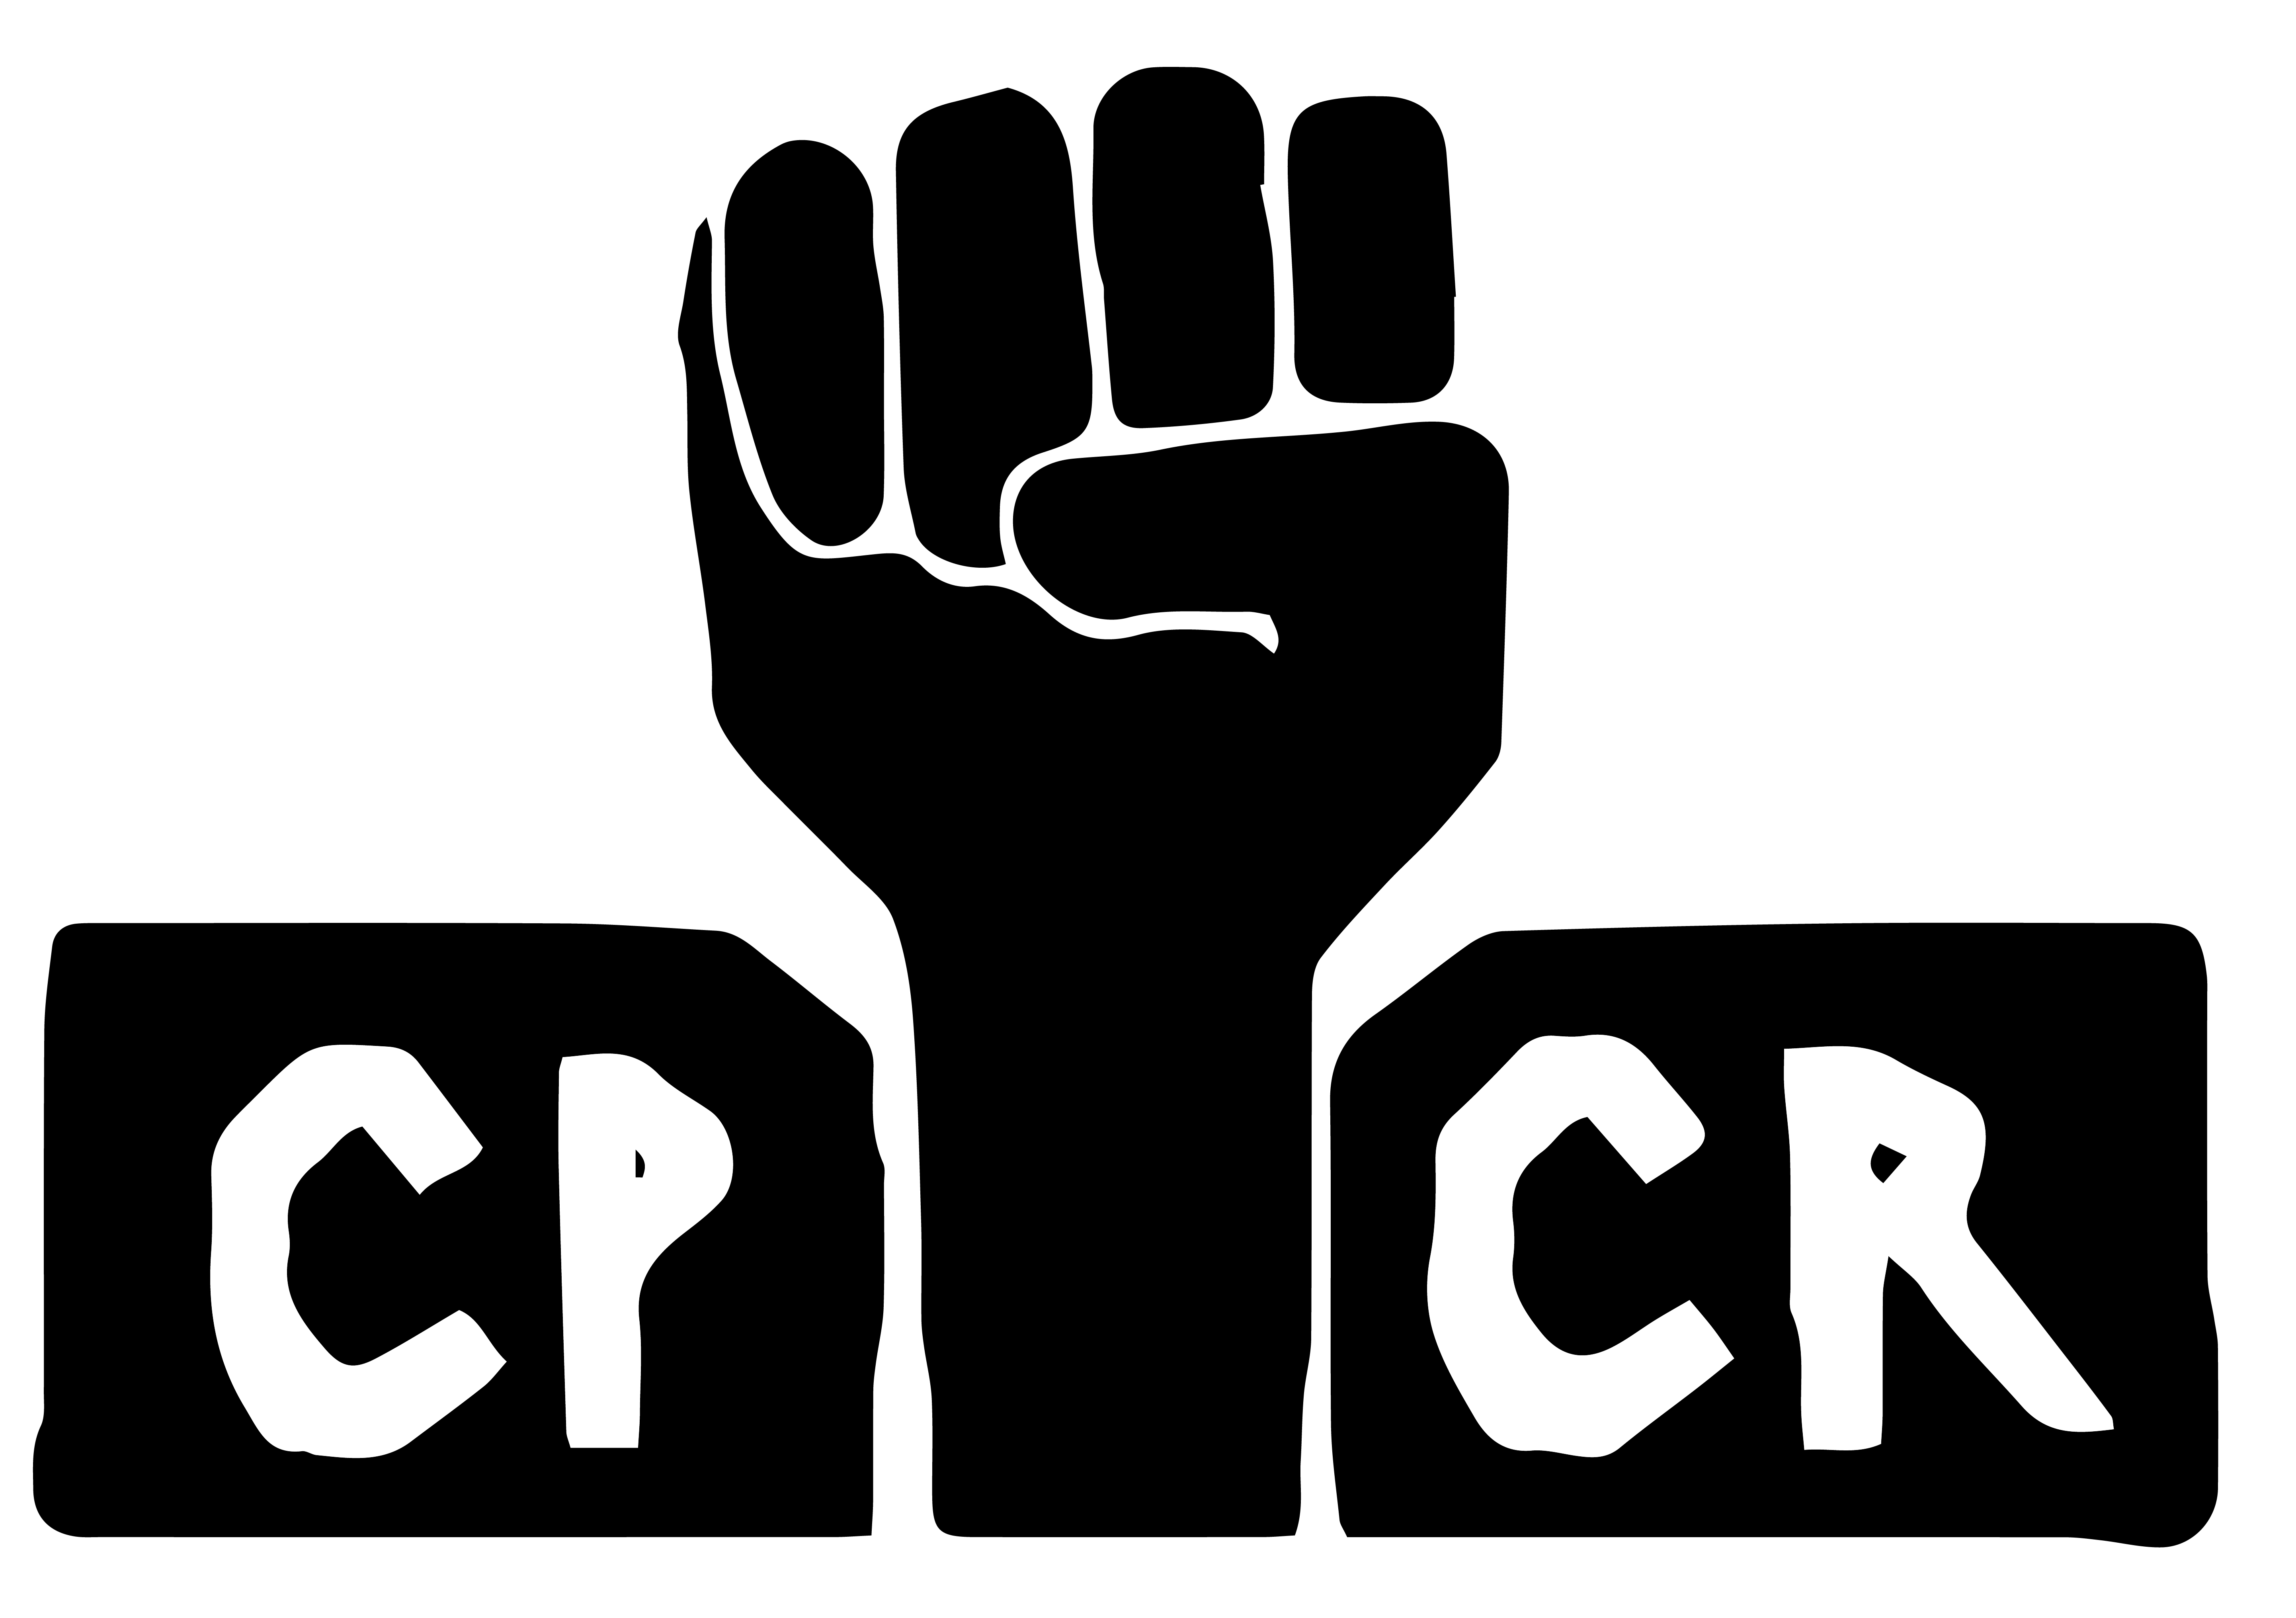 CPCR – Centre polyculturel résistances